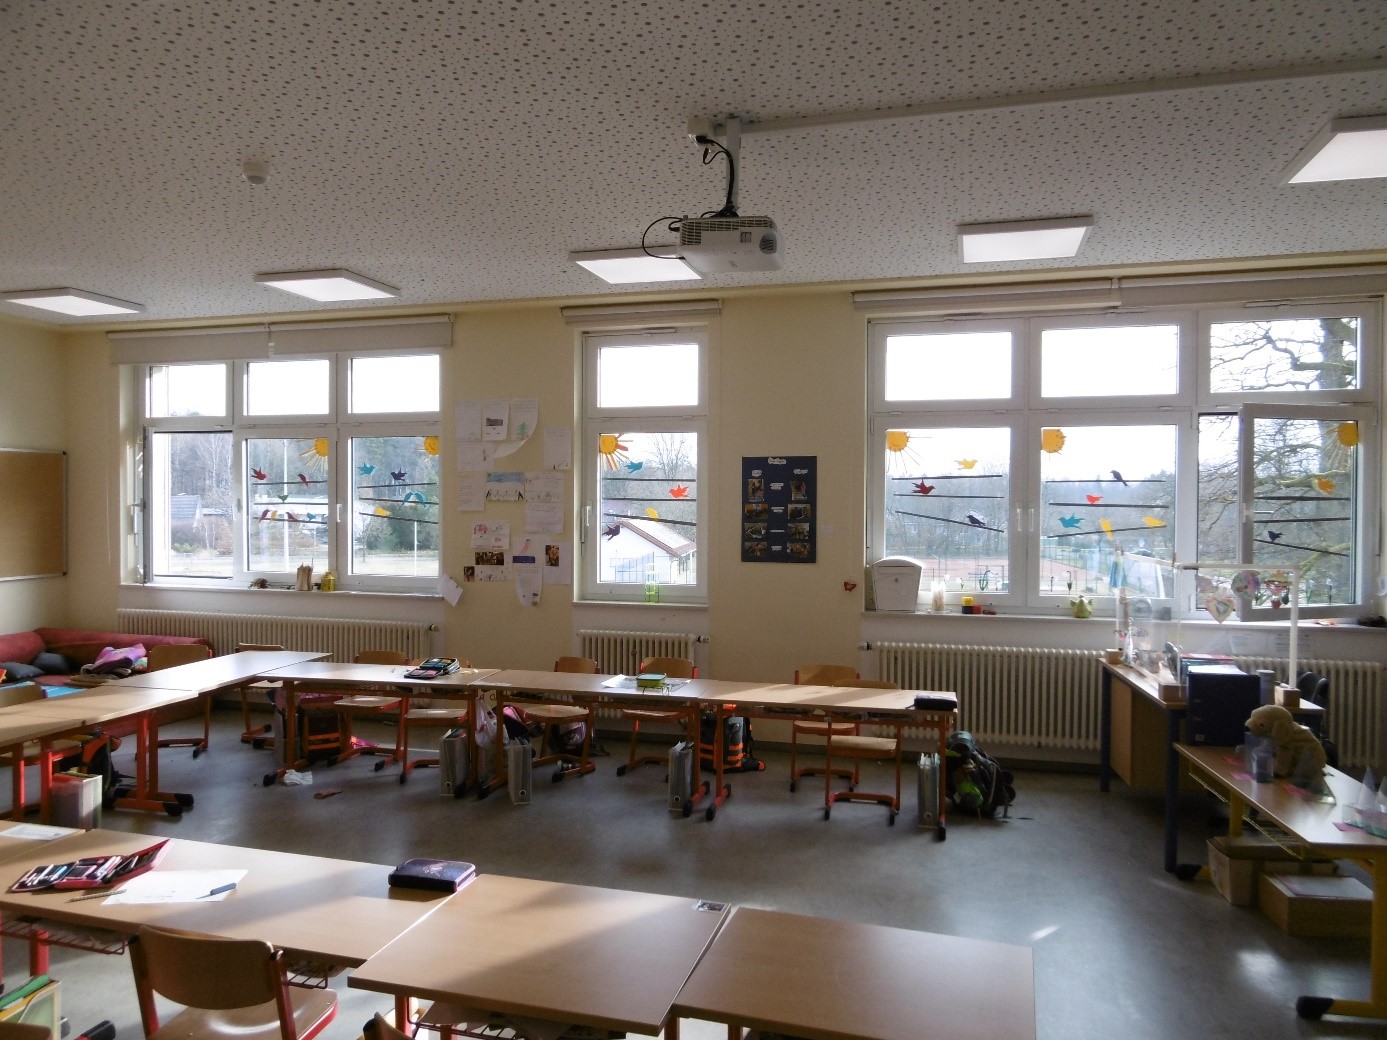 1. Abbildung: Klassenraum Obergeschoss nach Umrüstung